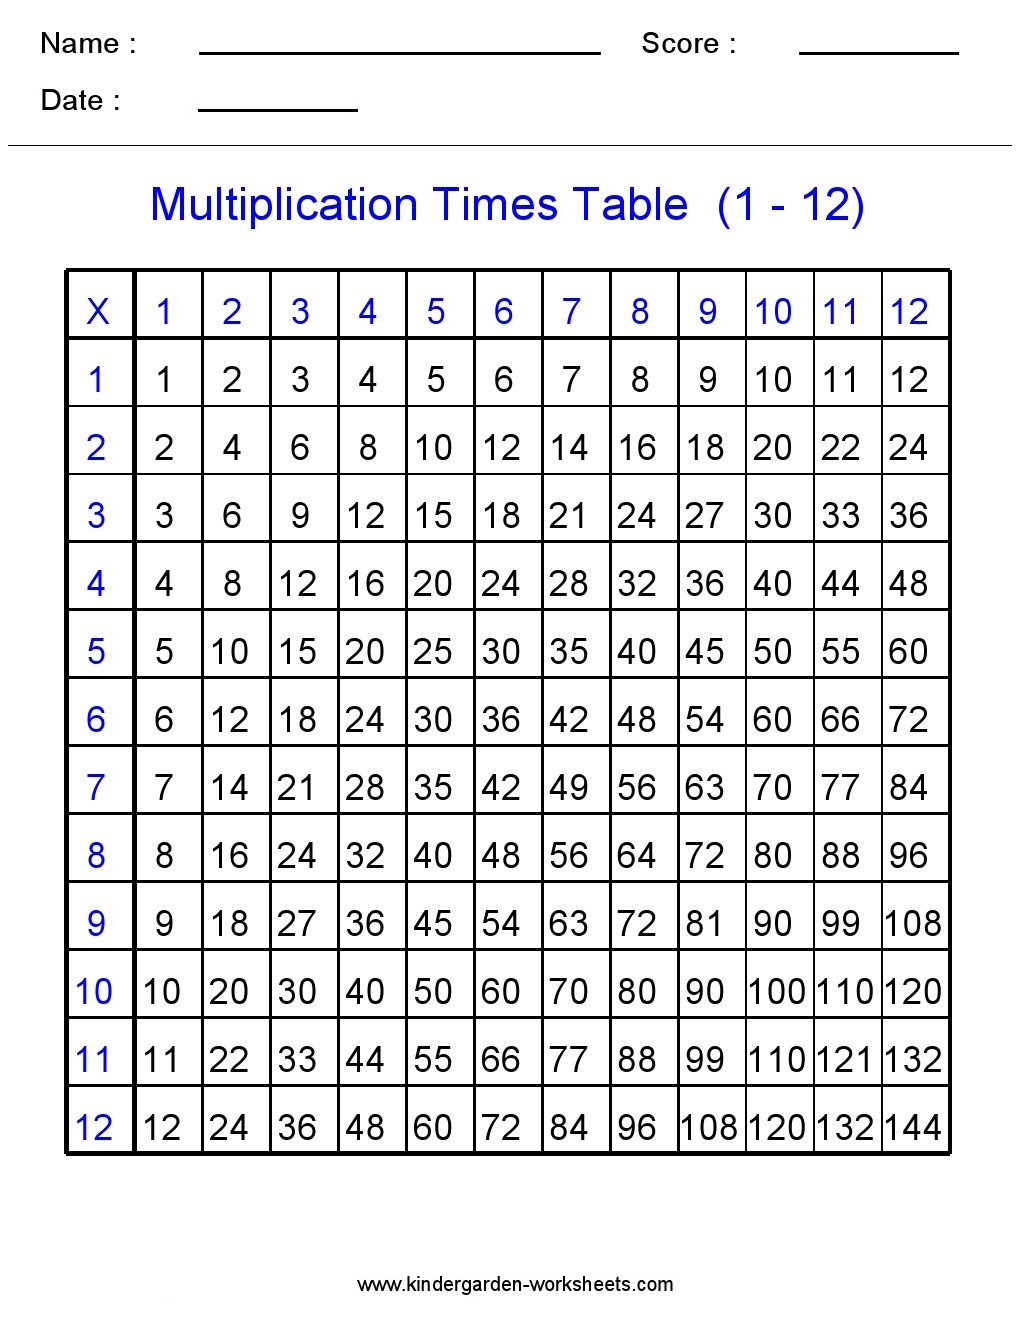 Kindergarten Worksheets Maths Worksheets Multiplication Worksheets Multi Times Table